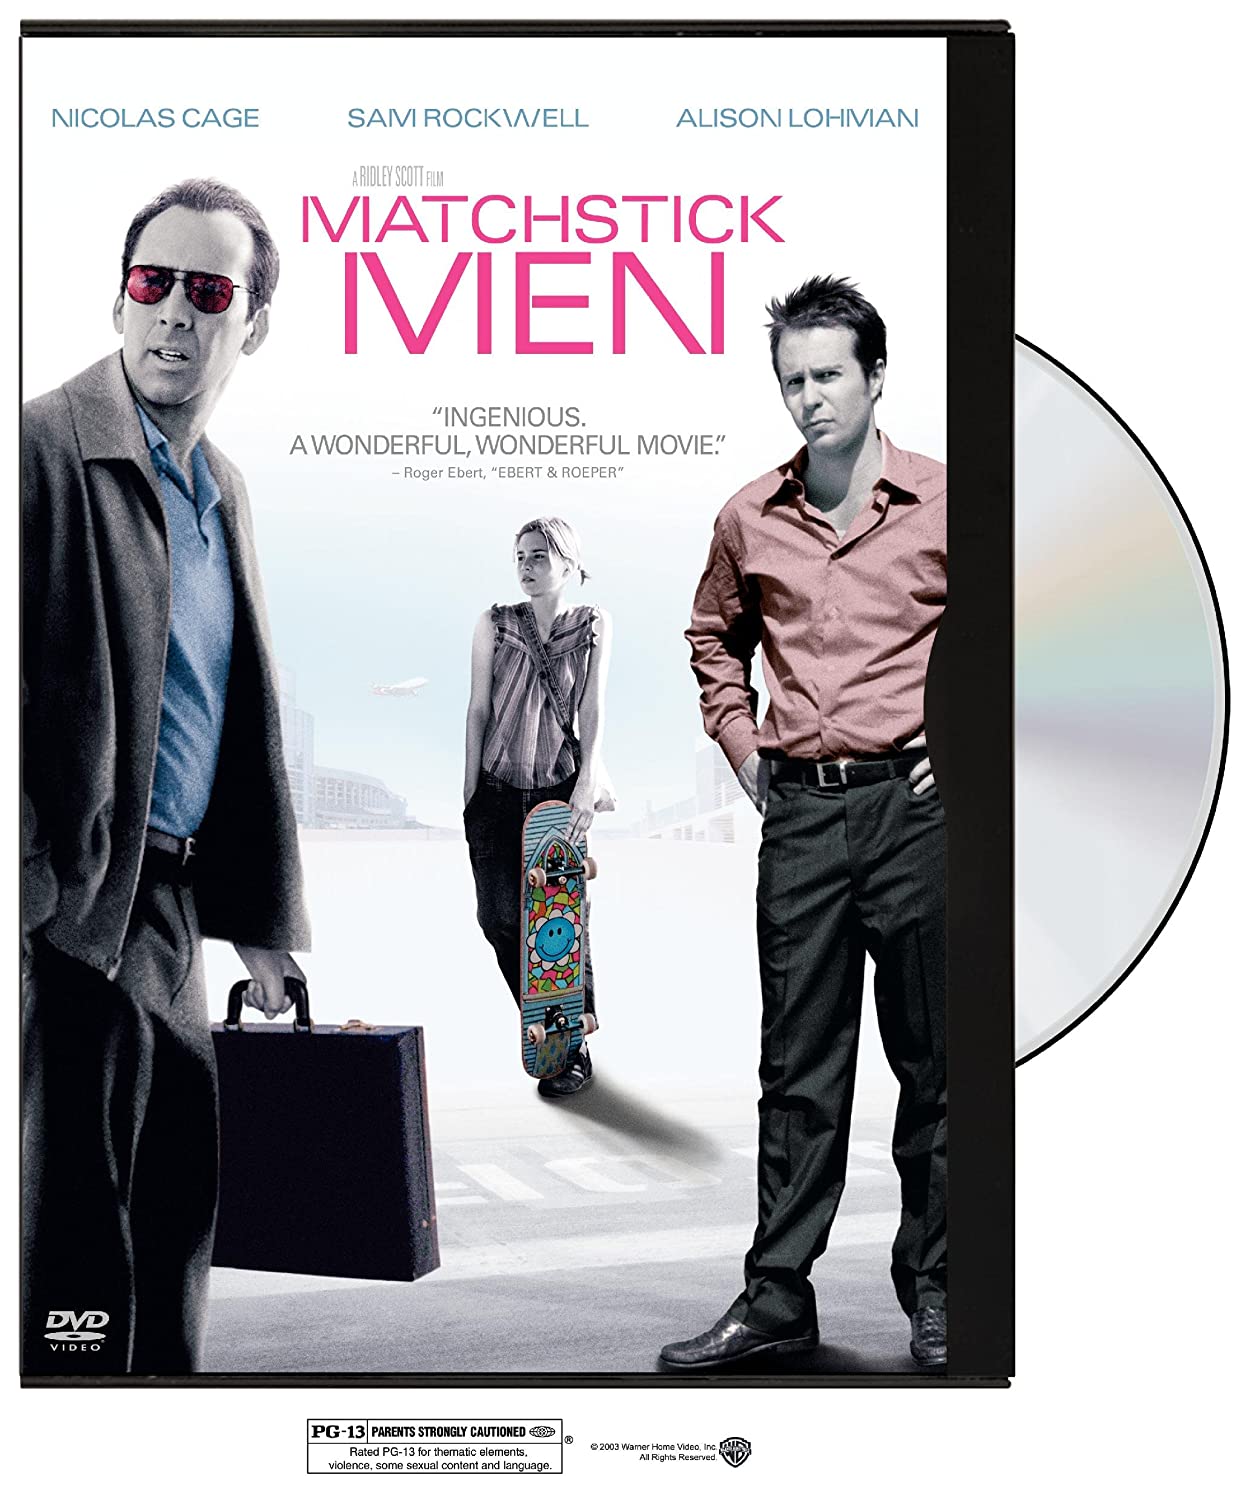 MATCHSTICK MEN (WIDESCREEN) / DVD